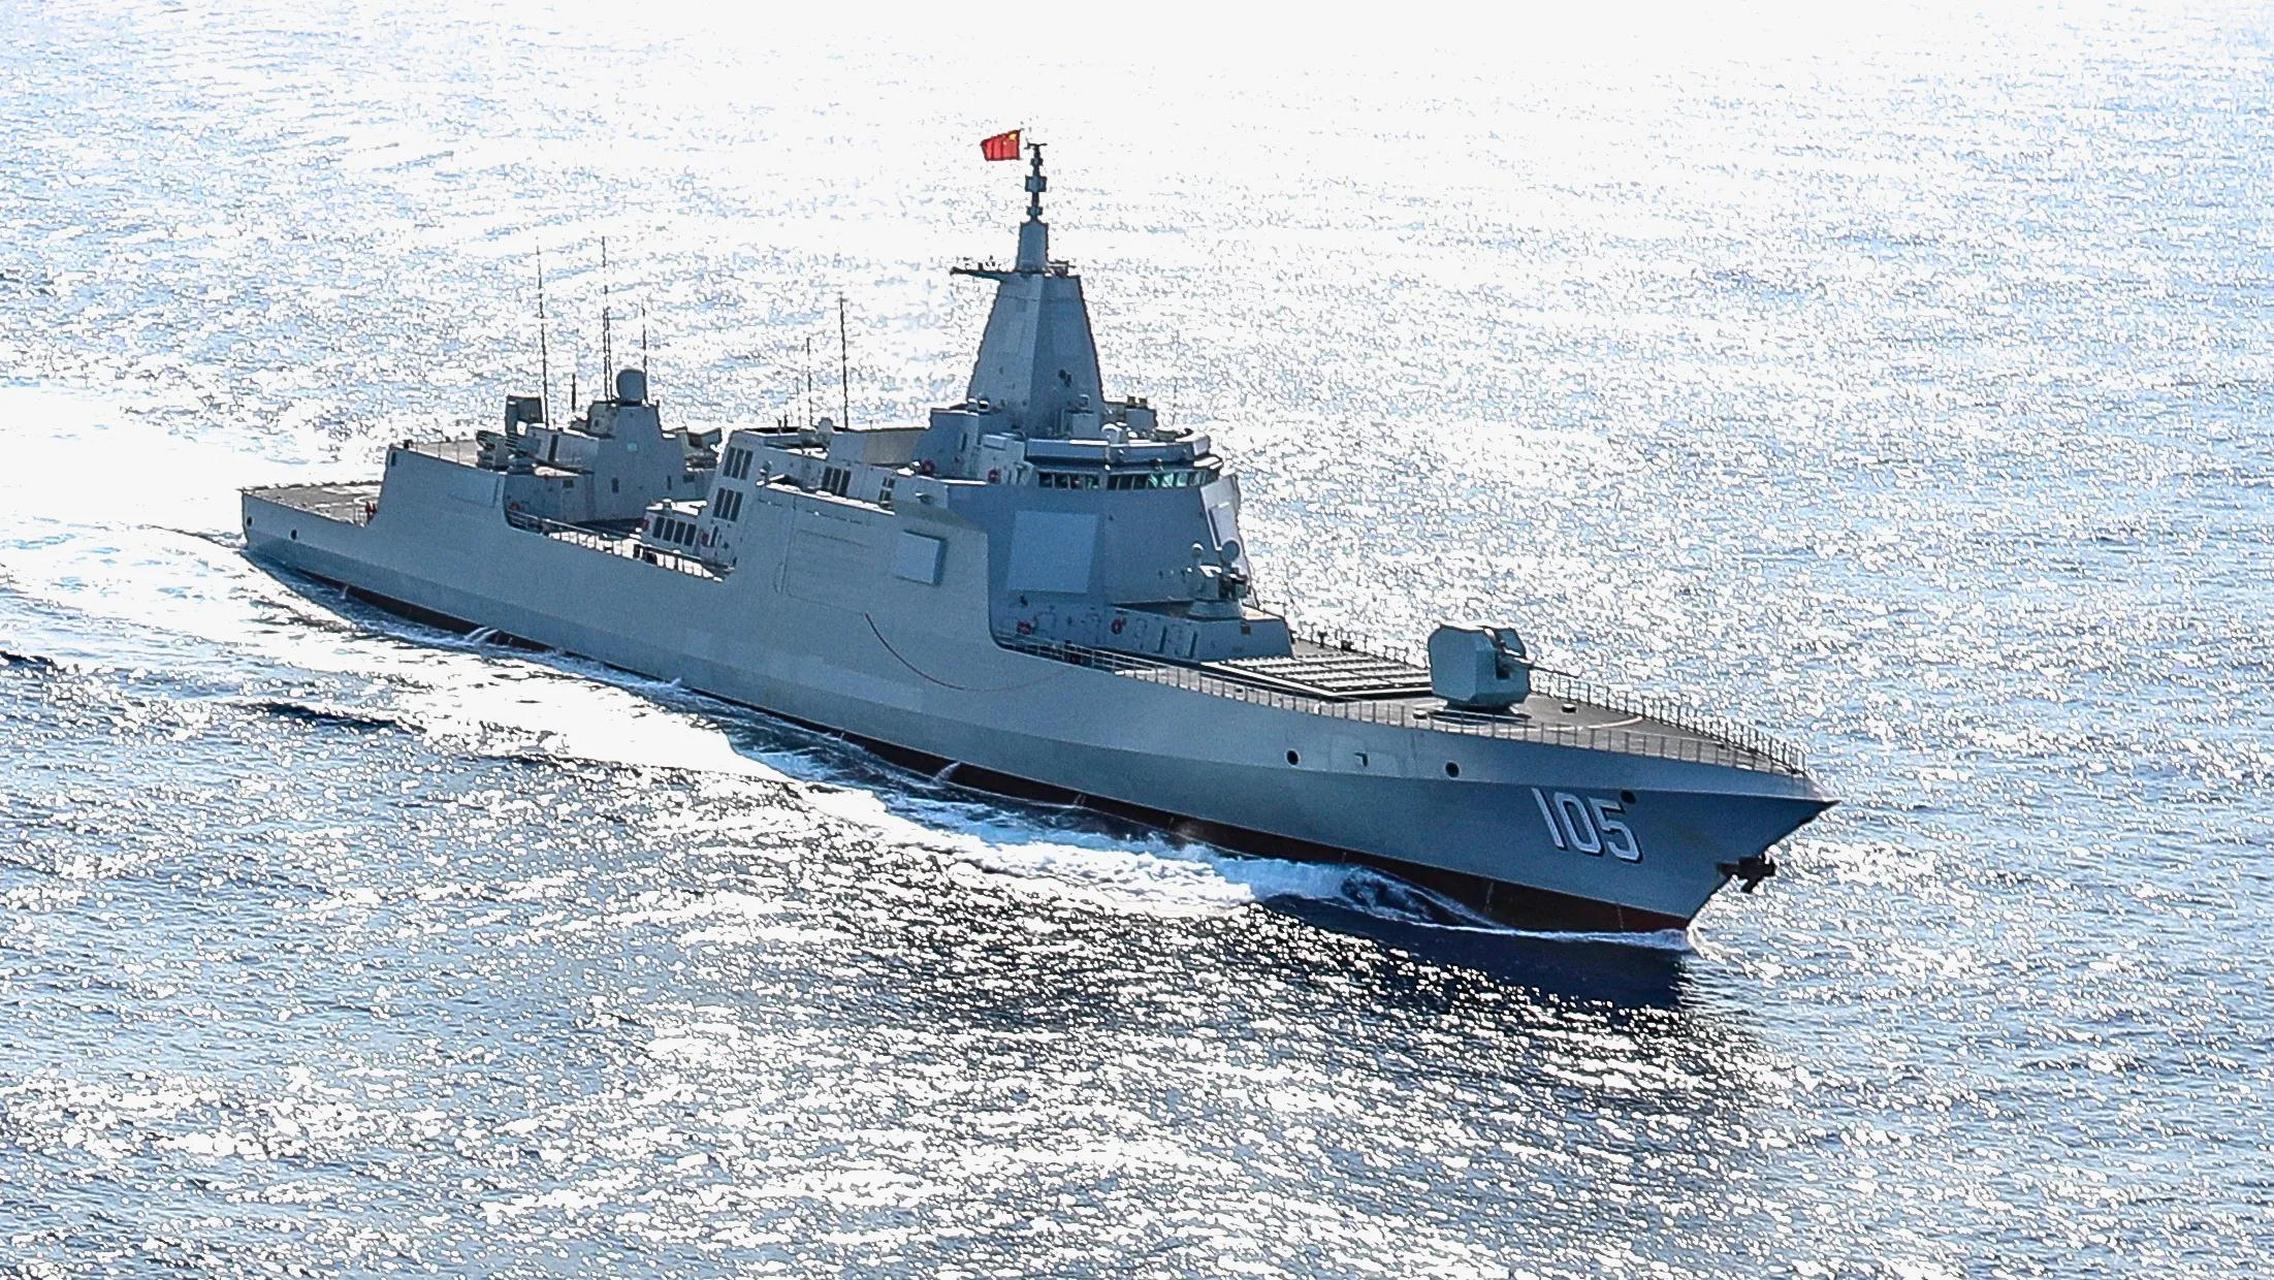 菲方要求中国离开黄岩岛,美军炸毁中国渔船,我国5舰亮剑!